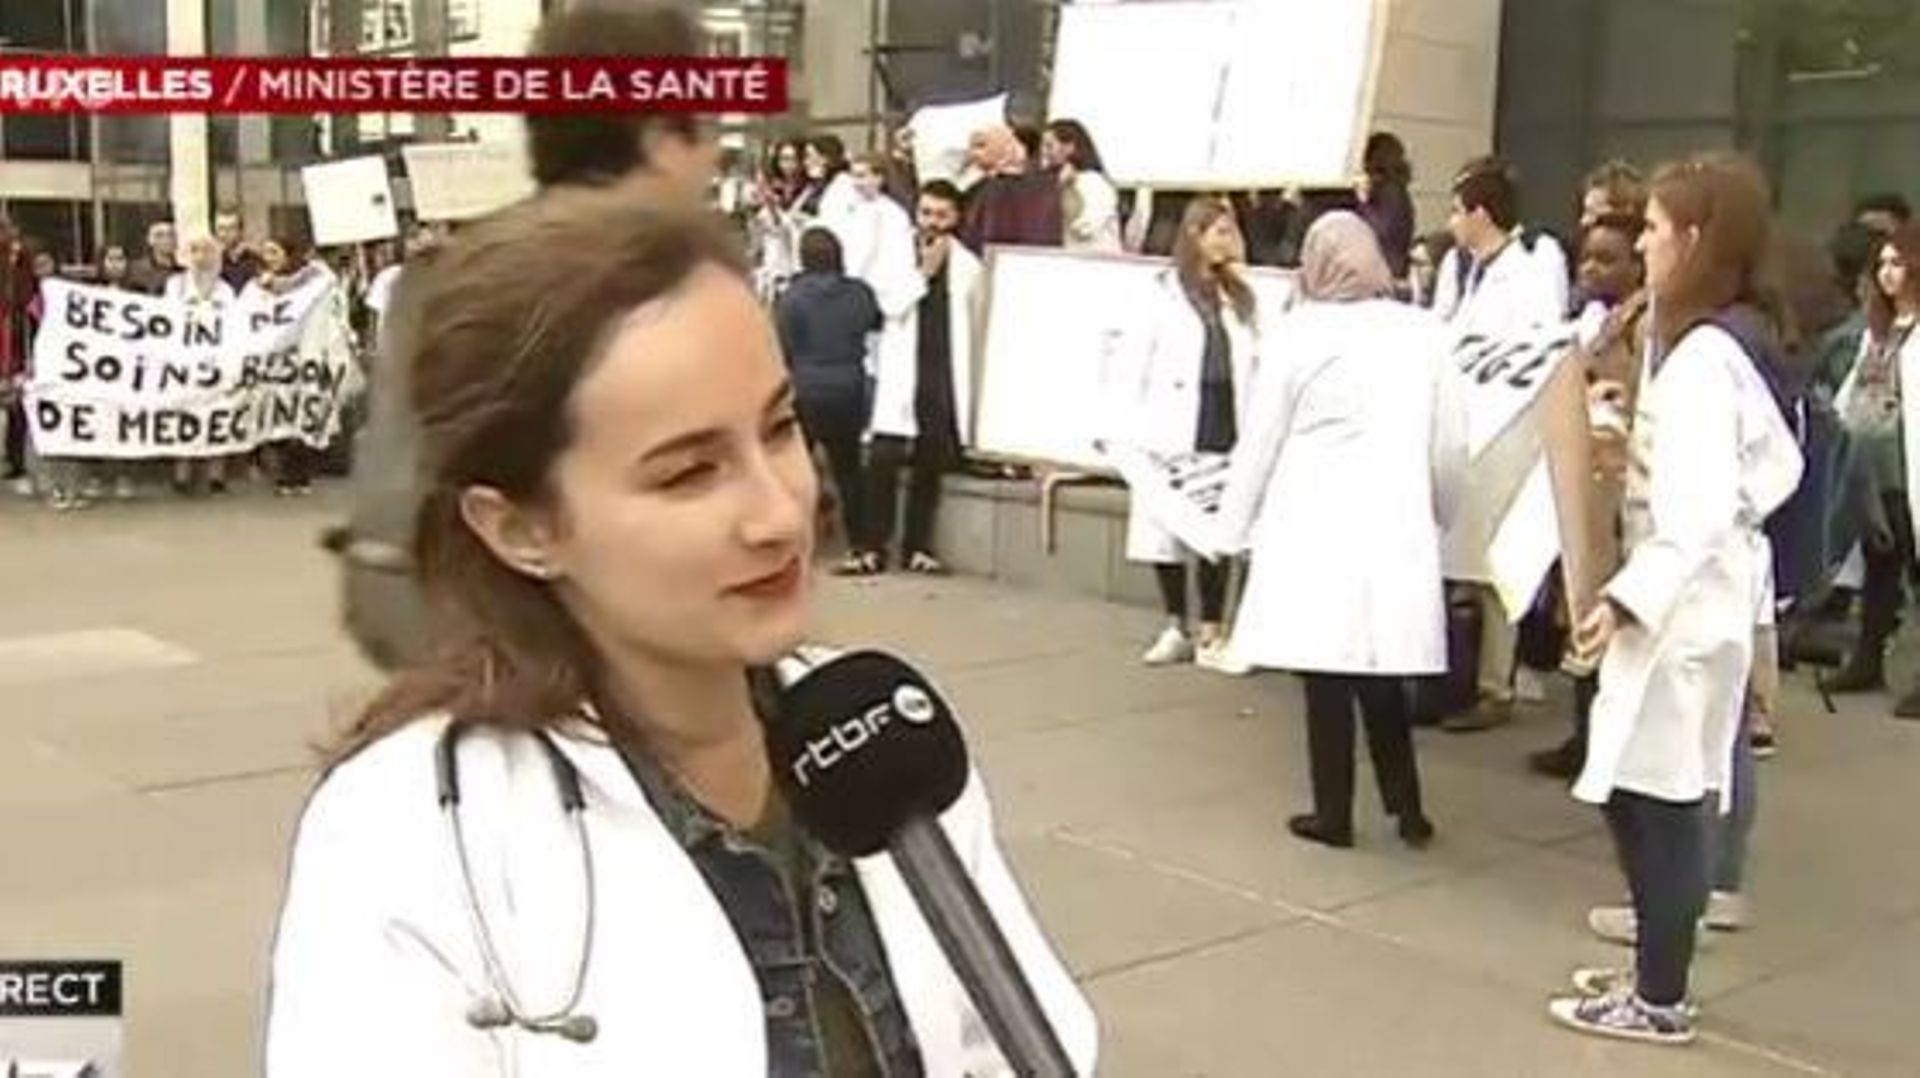 Des étudiants en médecine recalés manifestent contre l'absurdité du système